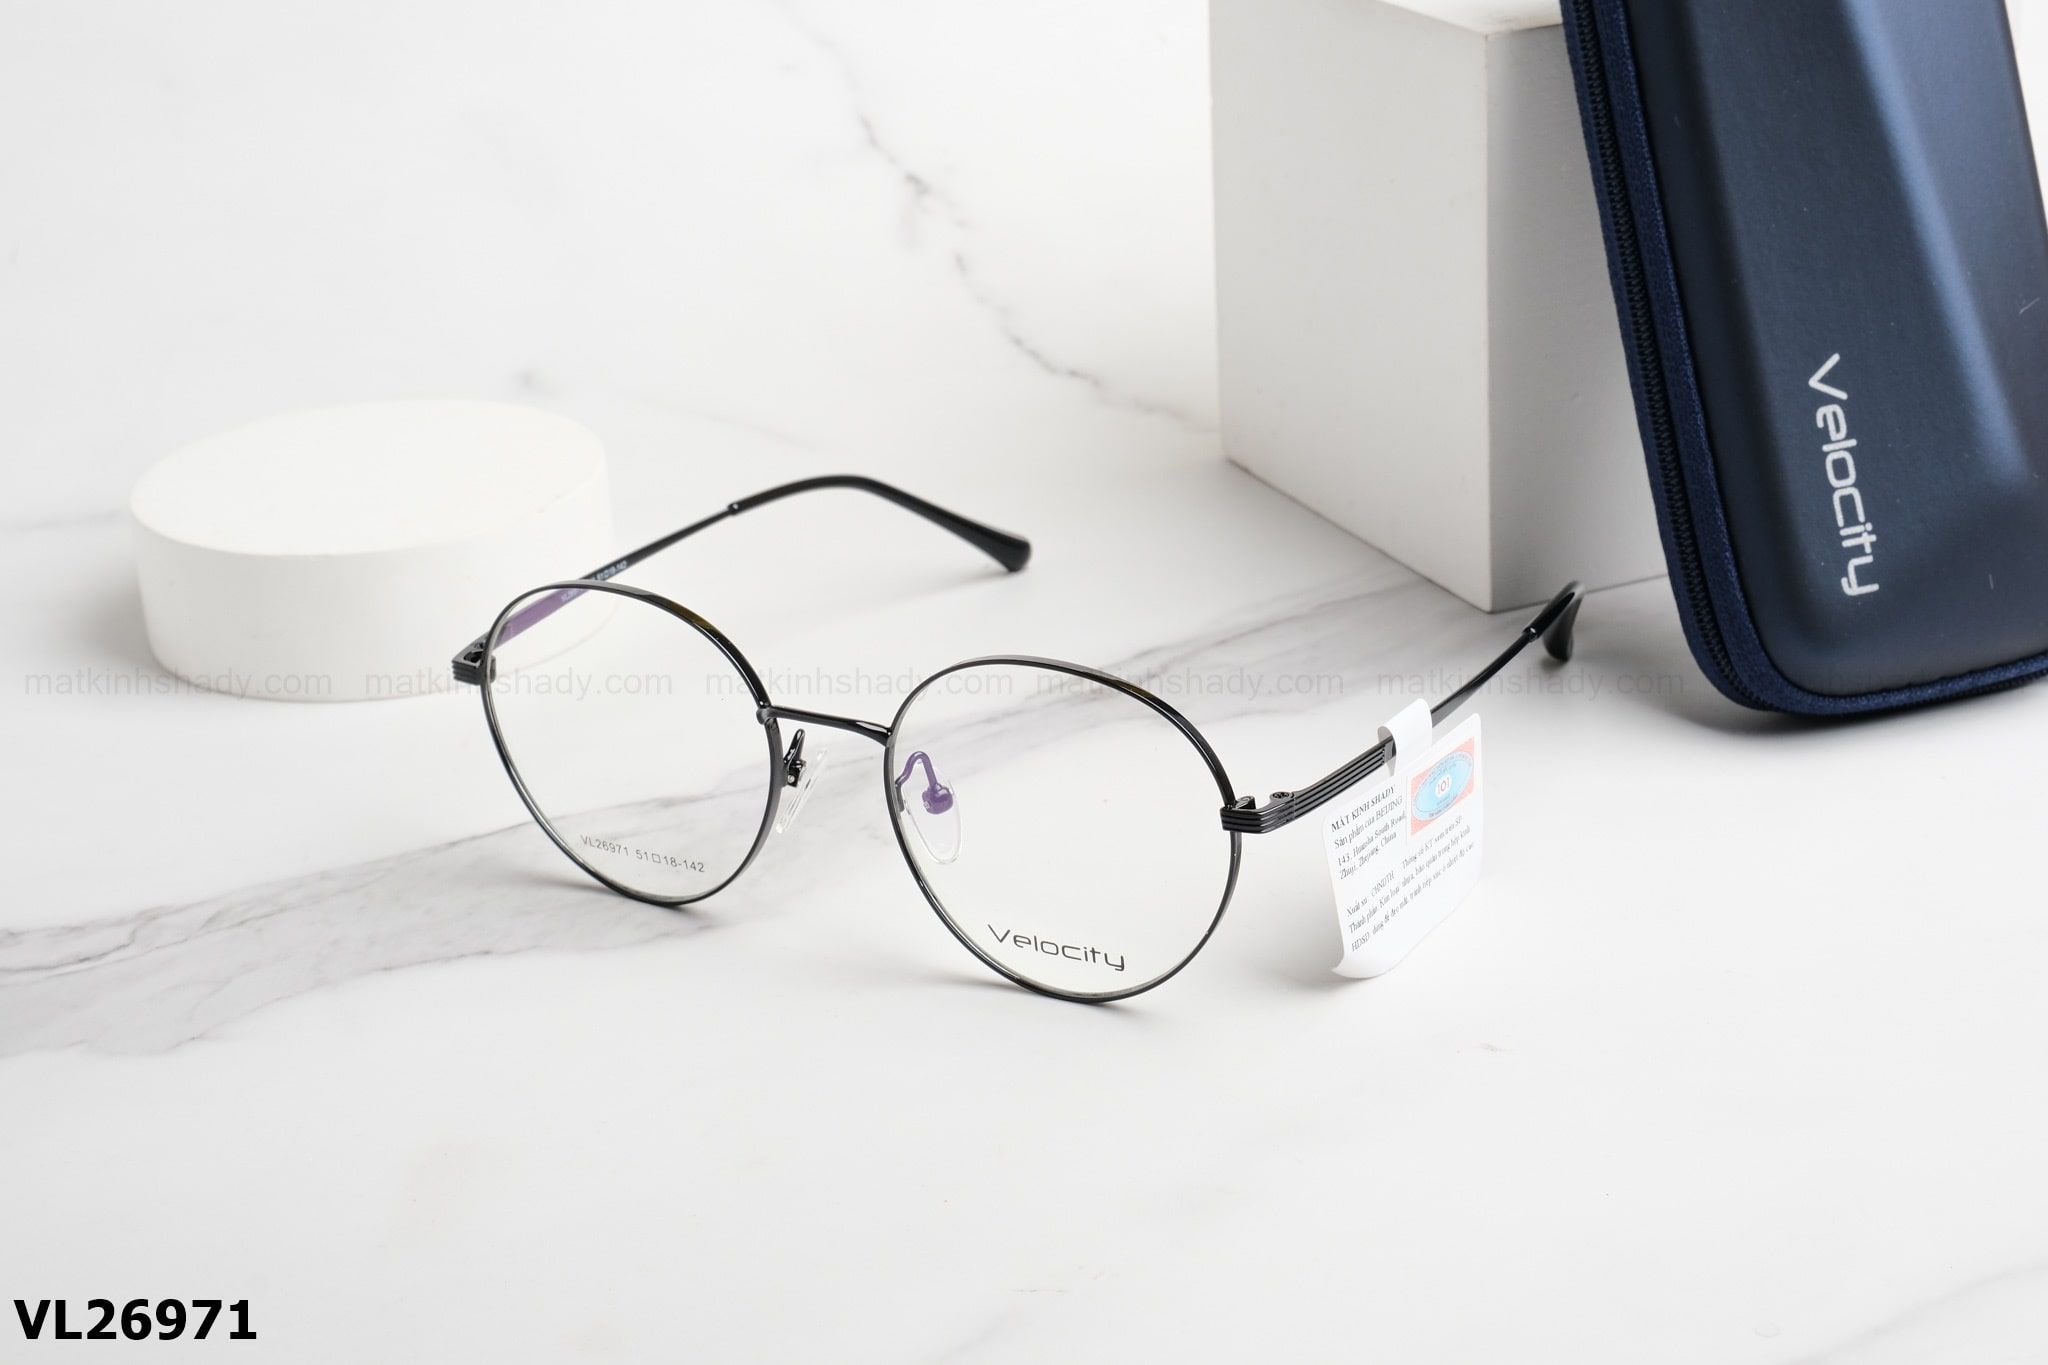  Velocity Eyewear - Glasses - VL26971 